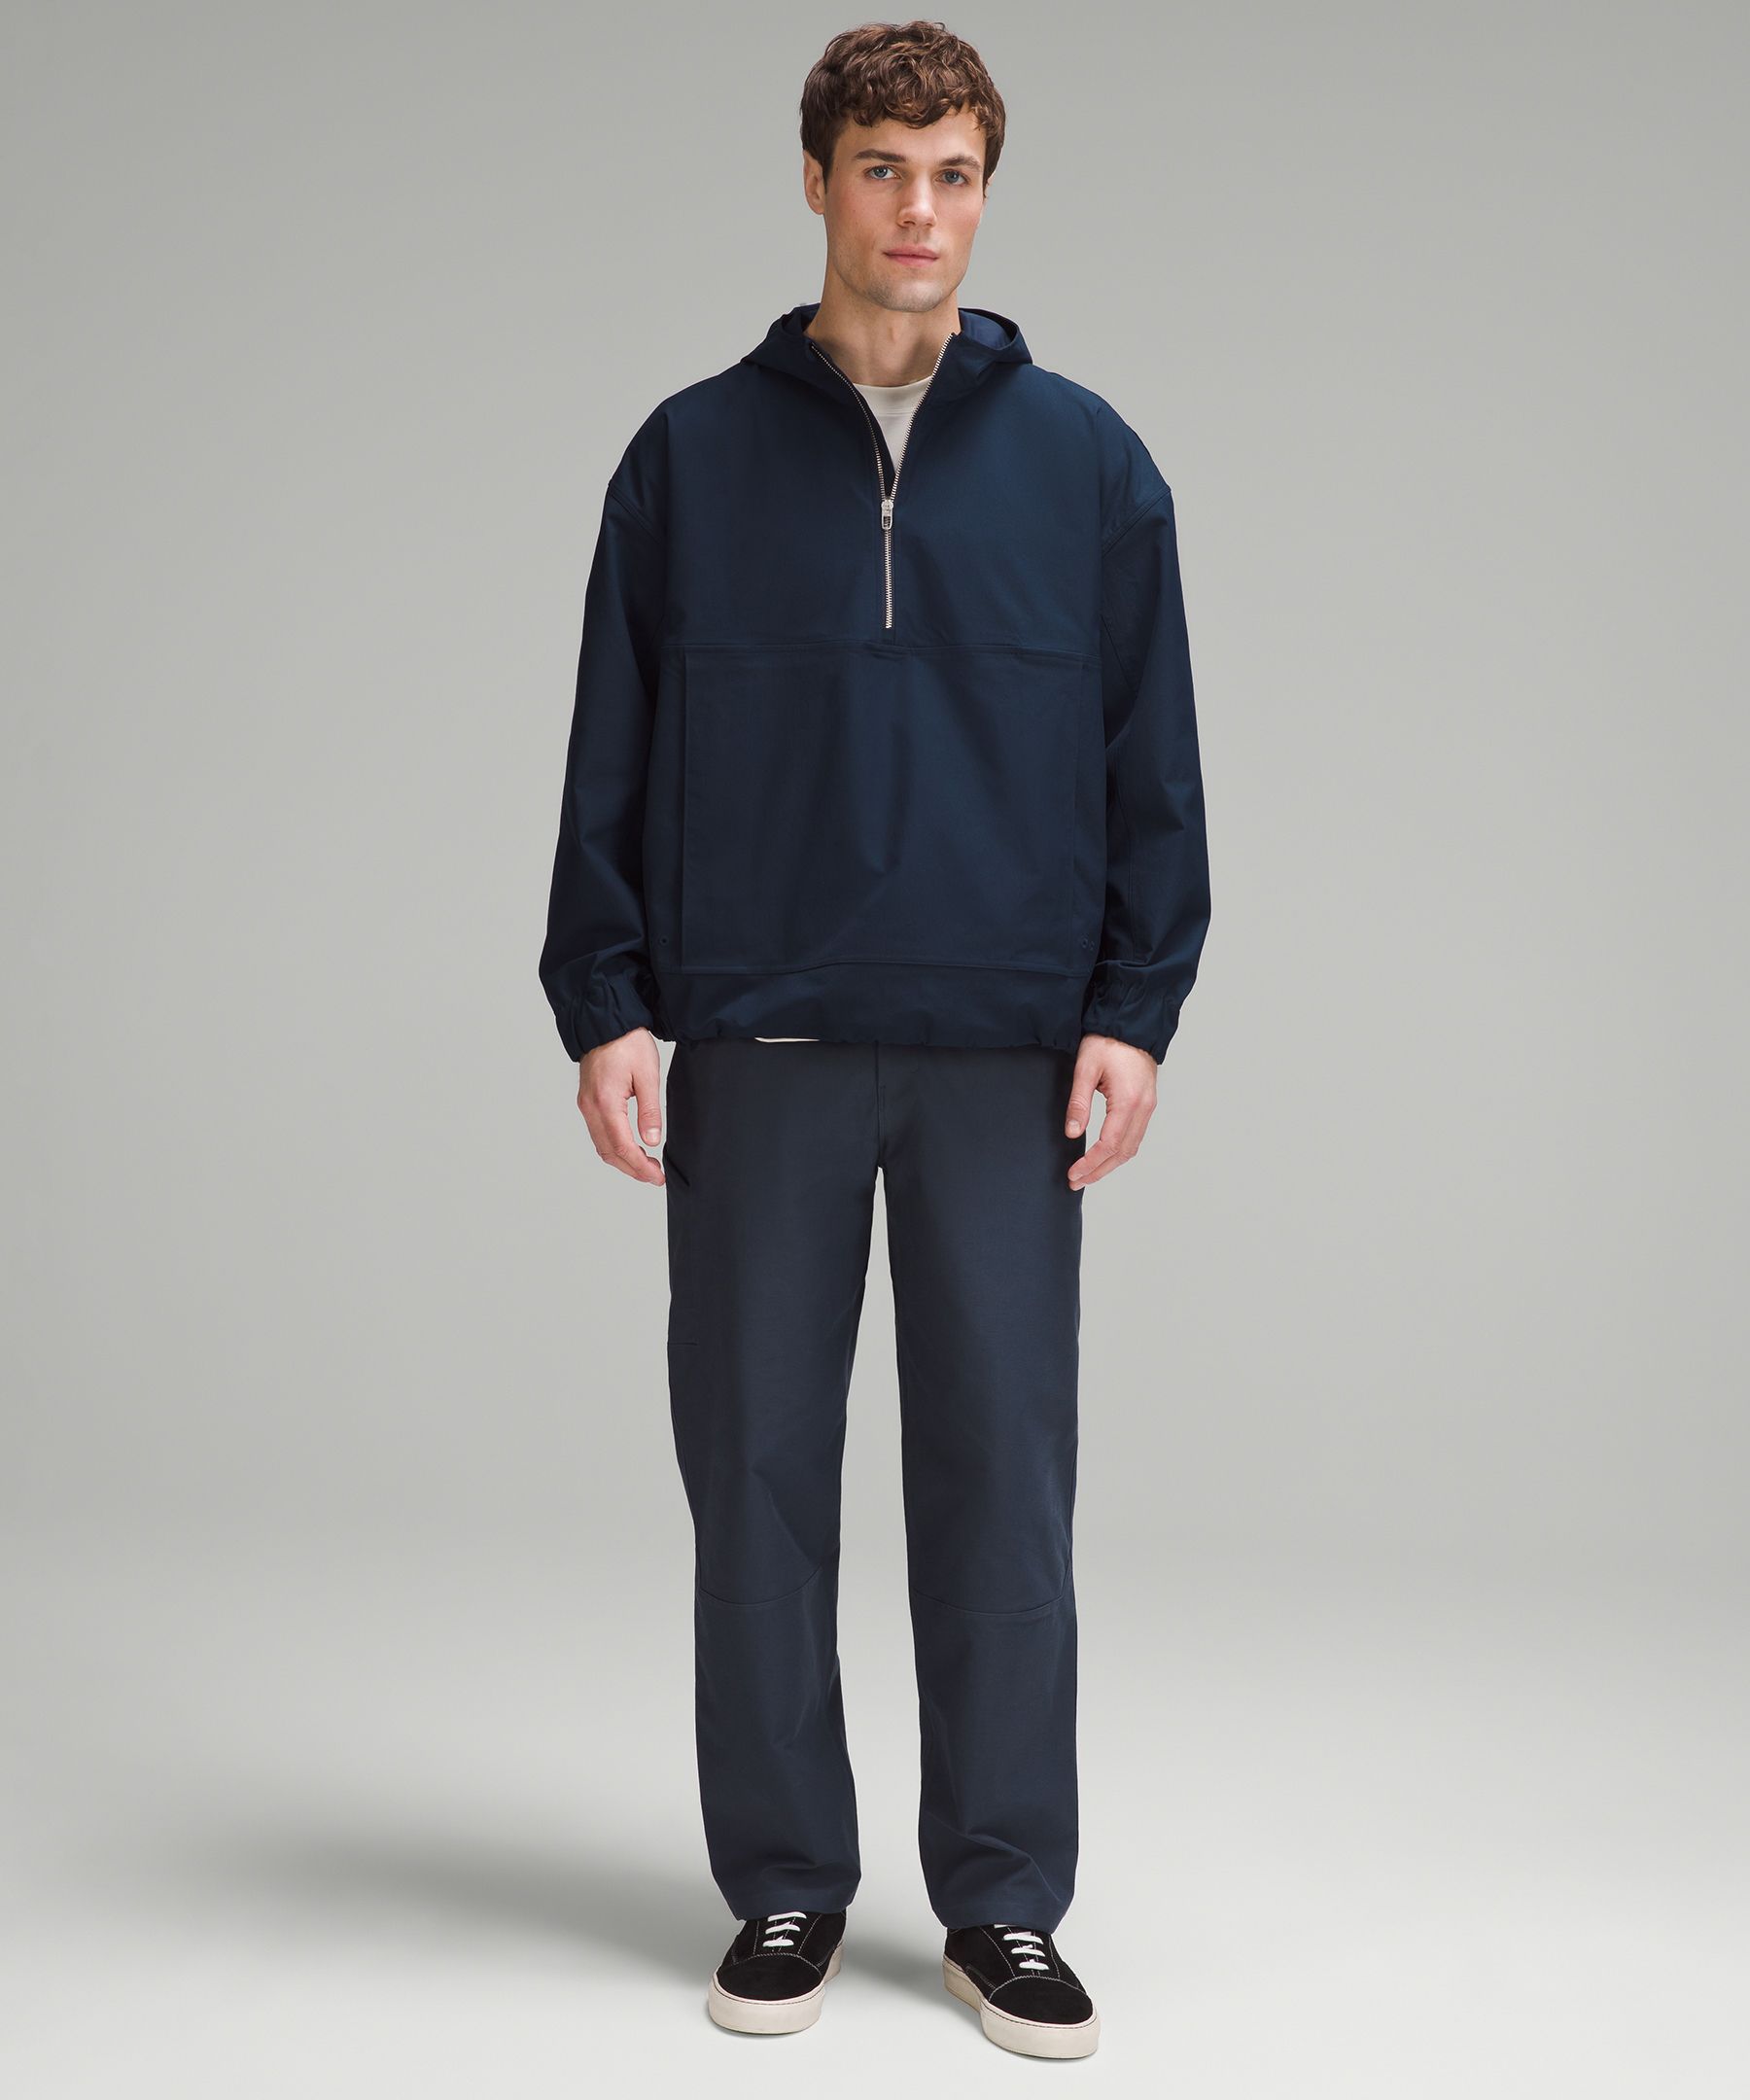 Smooth Twill Half-Zip Anorak | Men's Hoodies & Sweatshirts